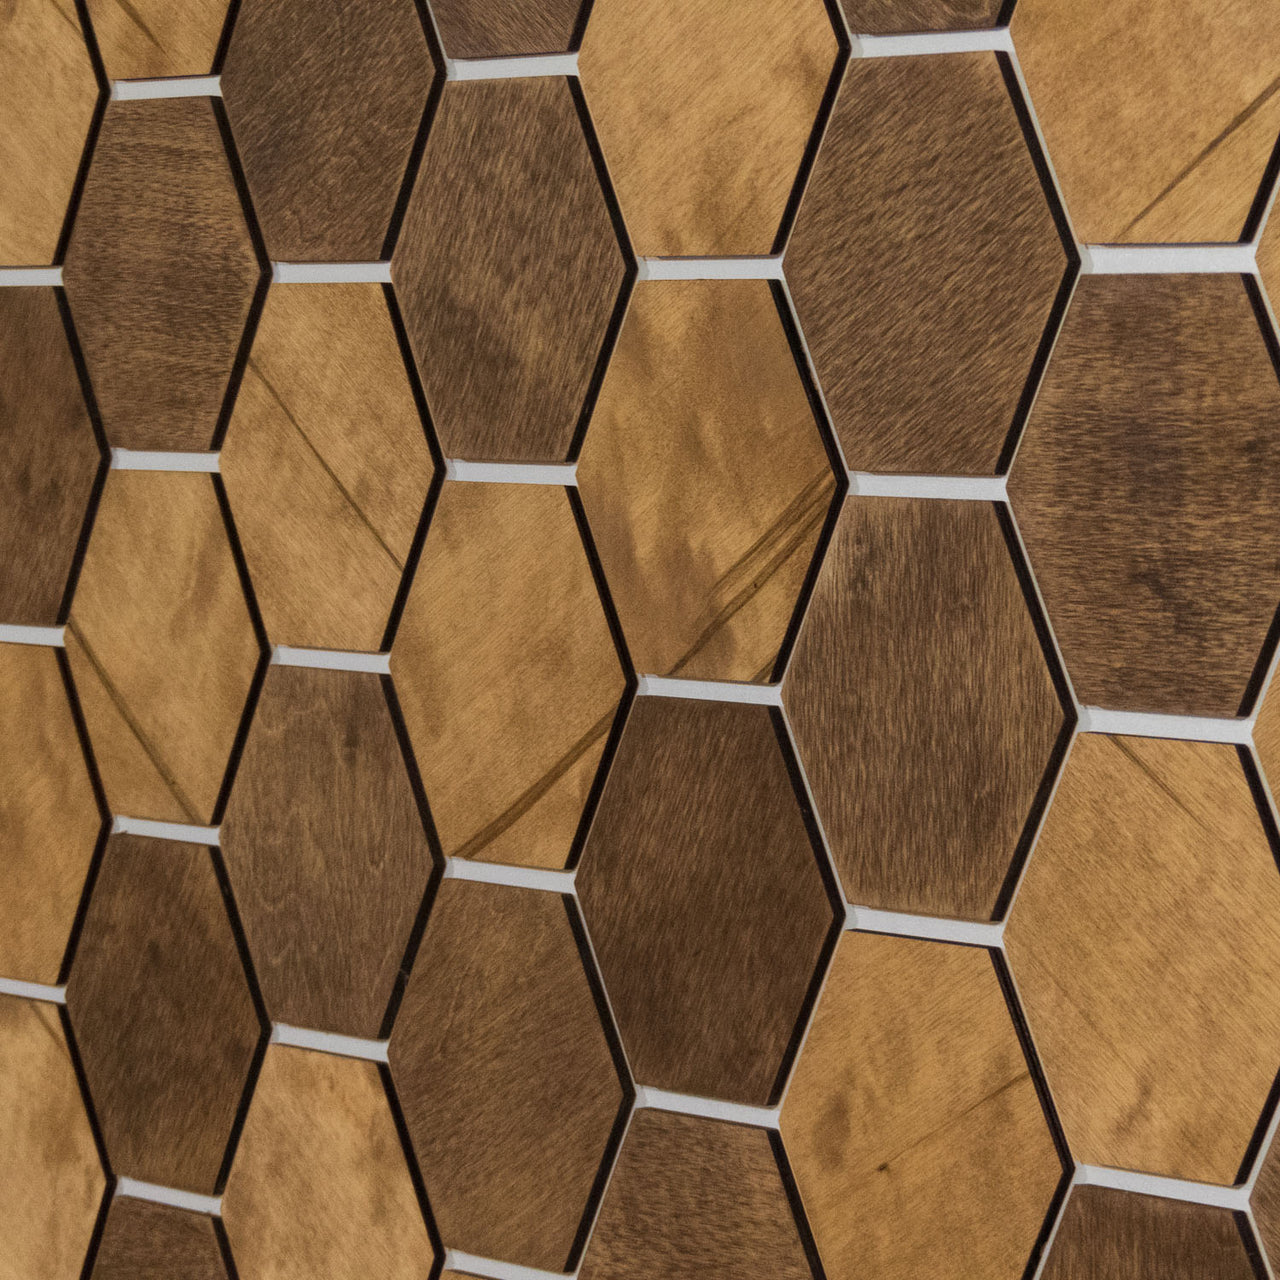 Hexagonal Wooden Wall Panels [32pcs] Birch Medium/Light